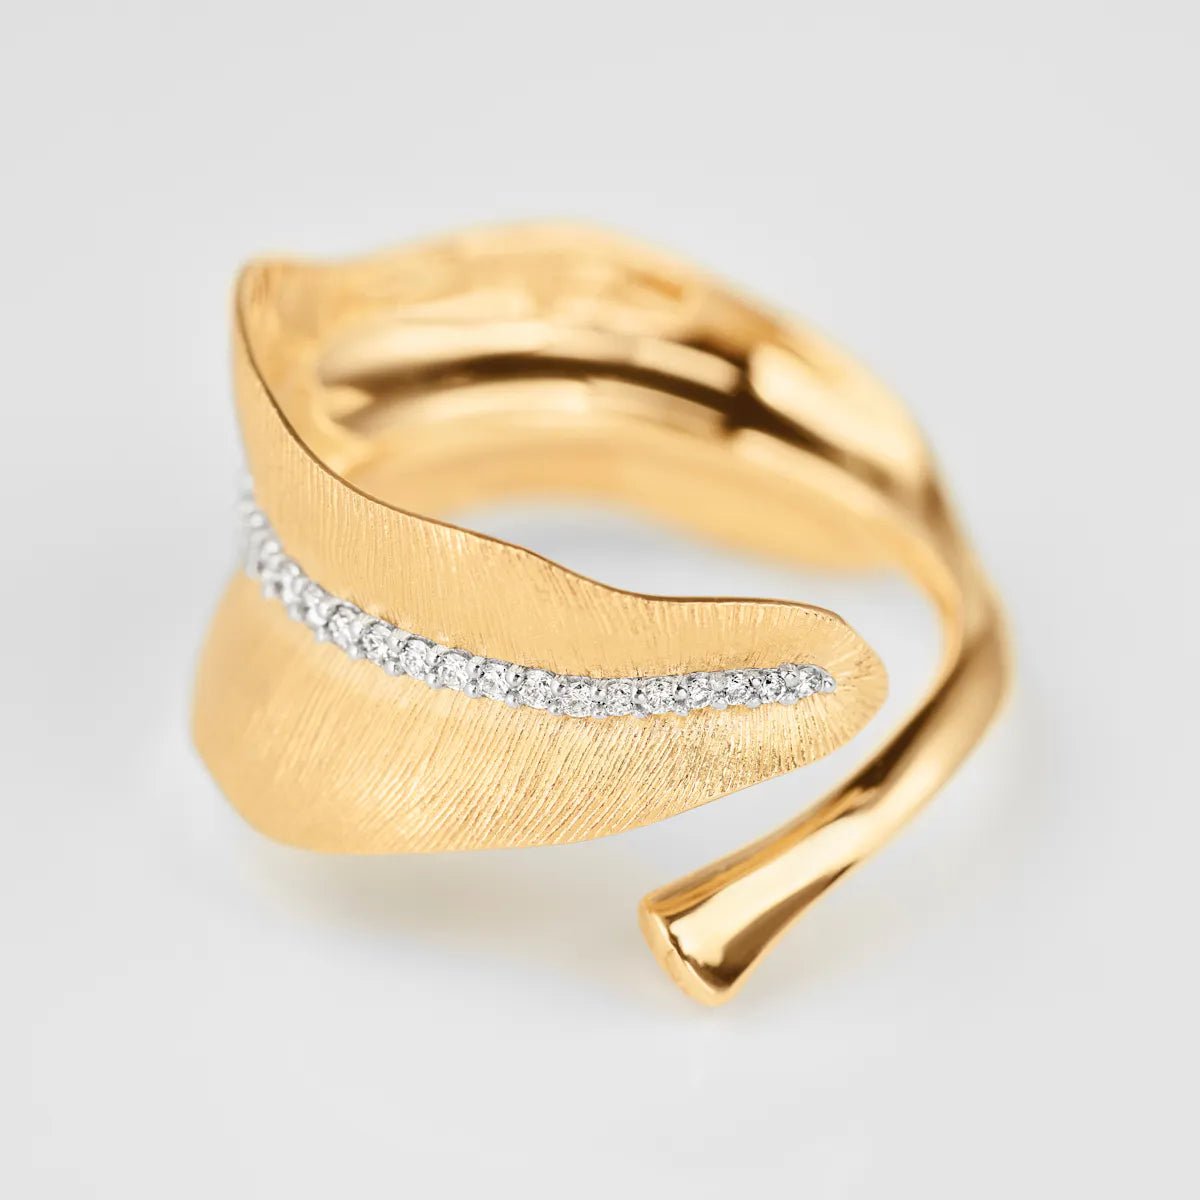 Ole Lynggaard Leaves Ring with Diamonds - Aurum Jewels